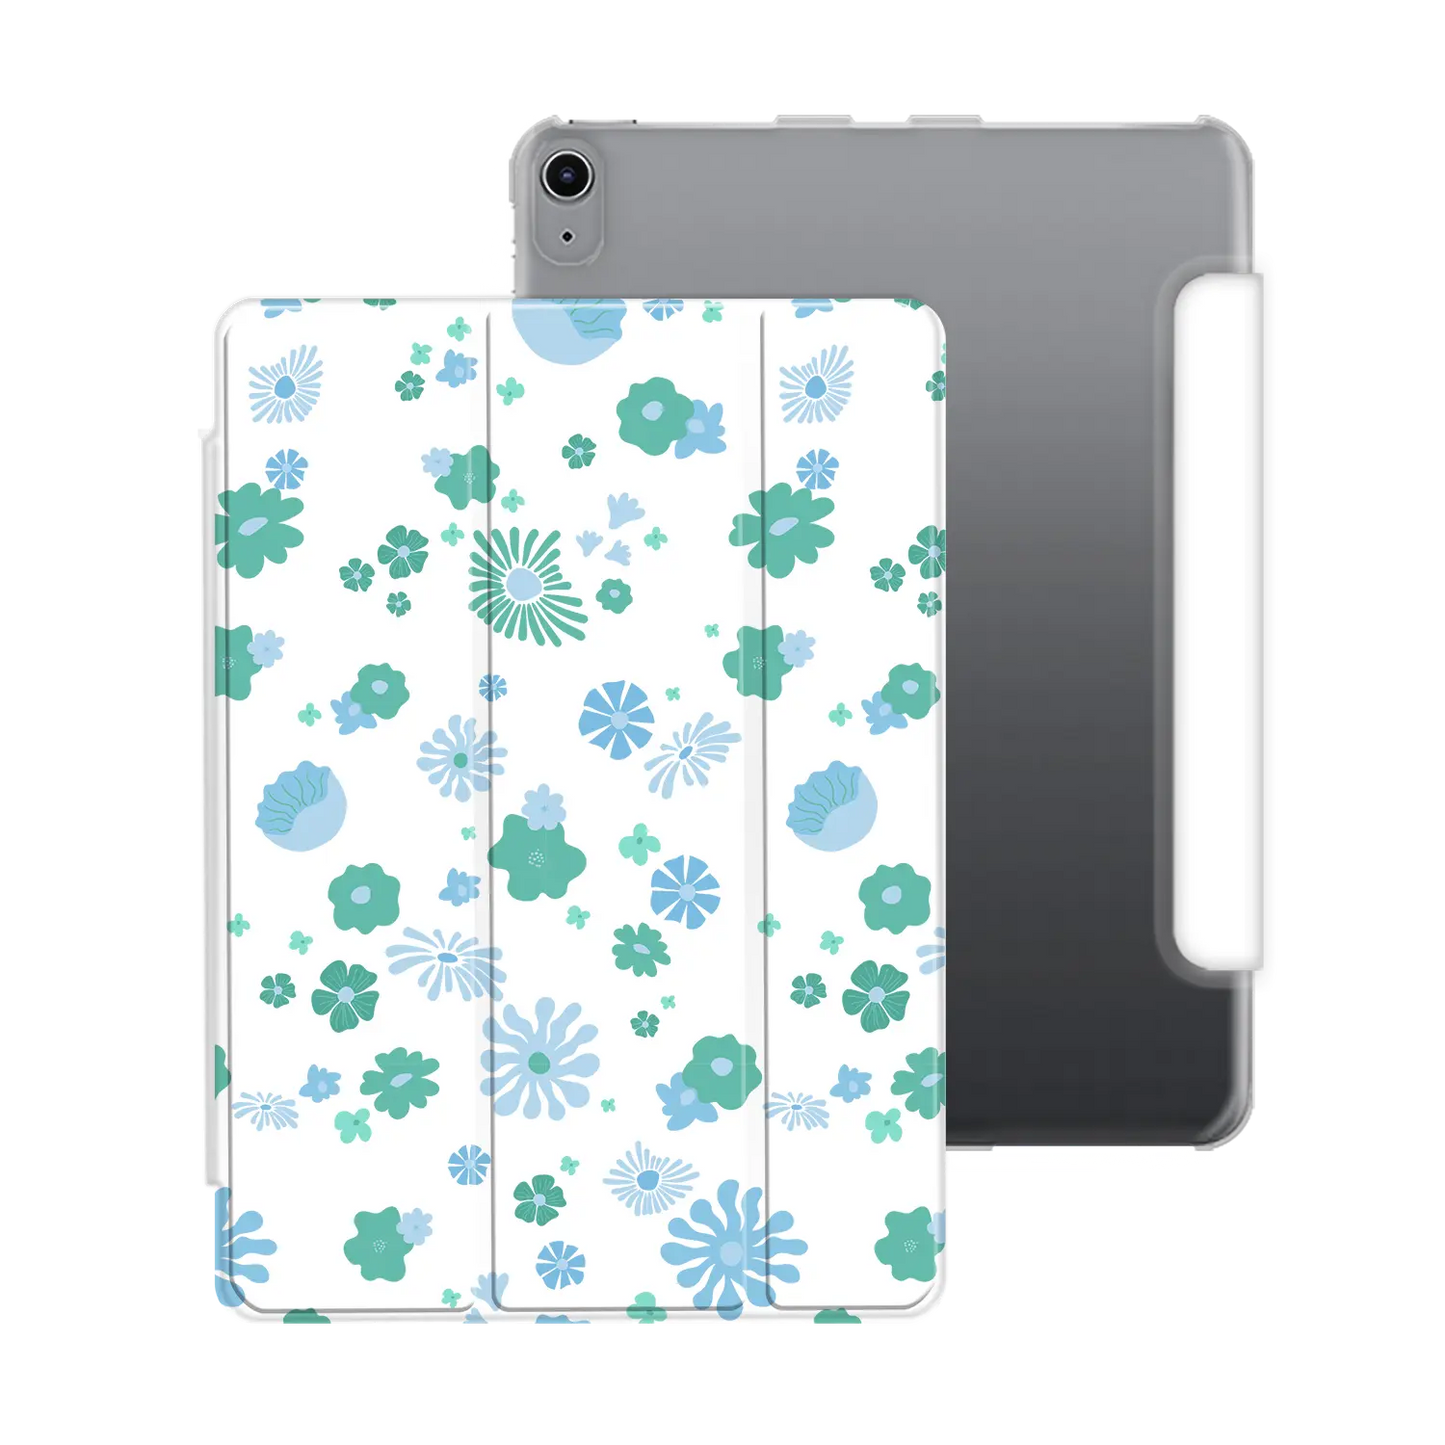 Flores hippies - iPad personalizado carcasa